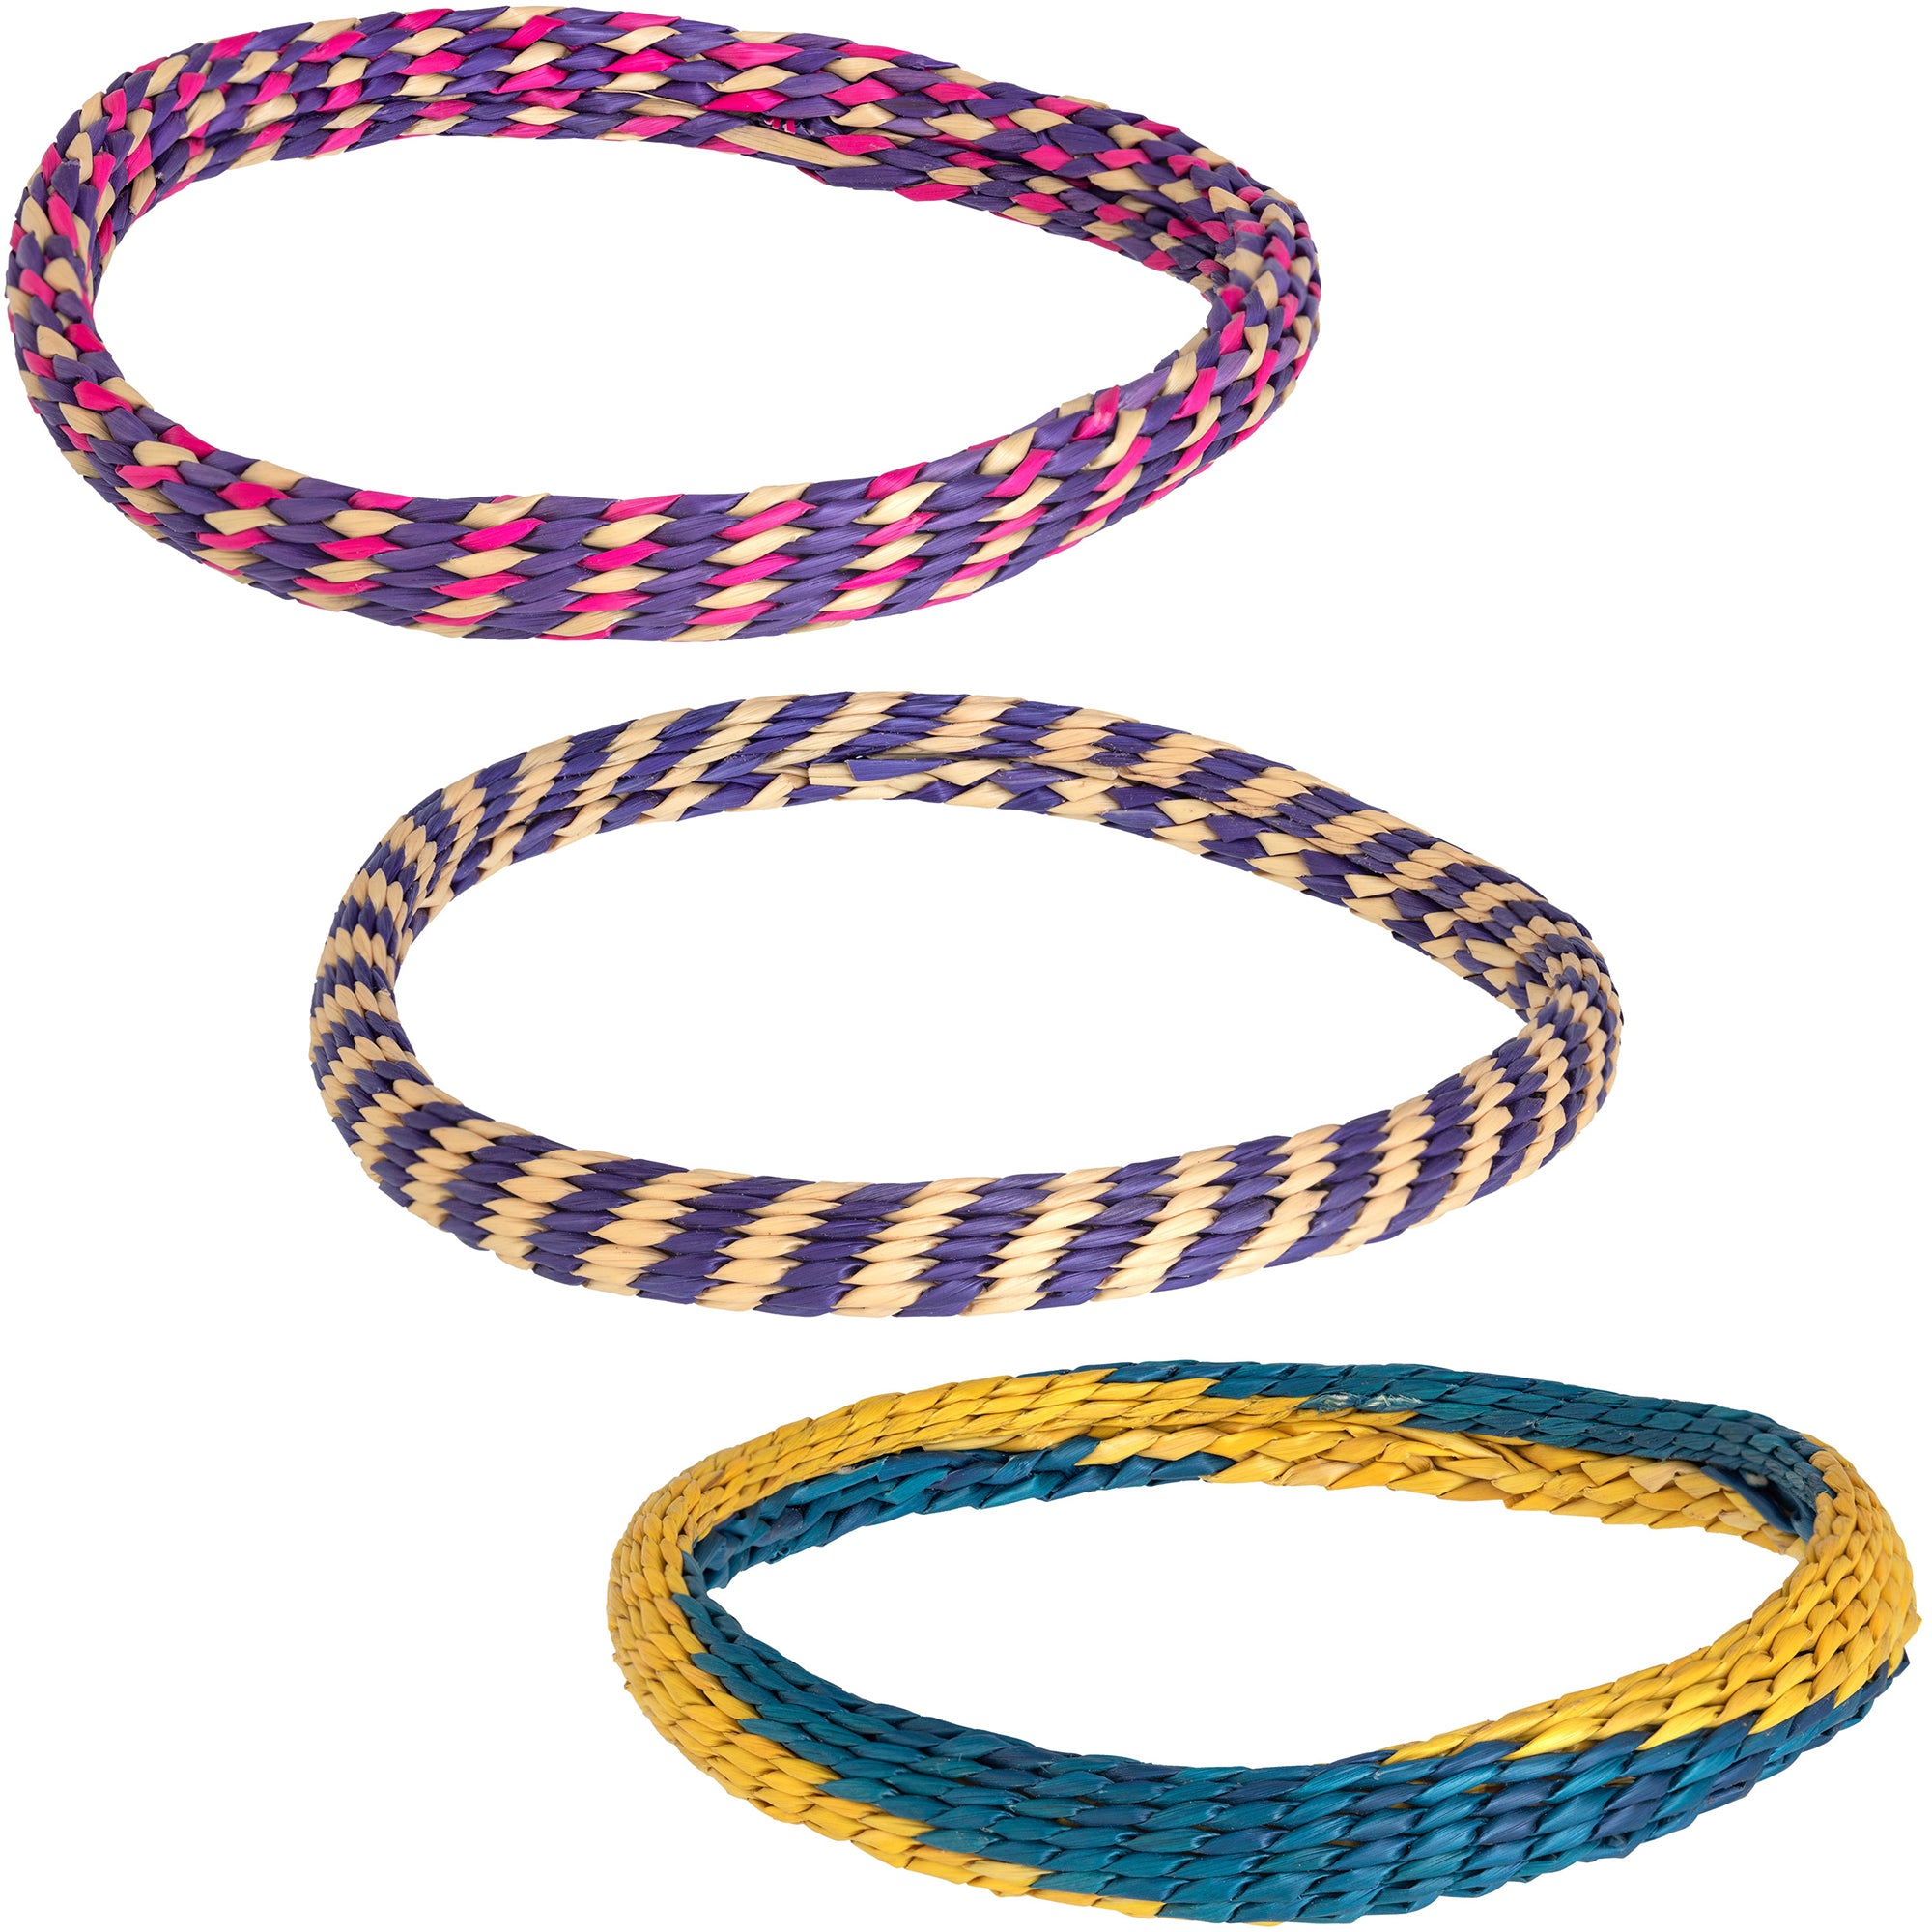 Handmade Woven Grass Bracelet - Single